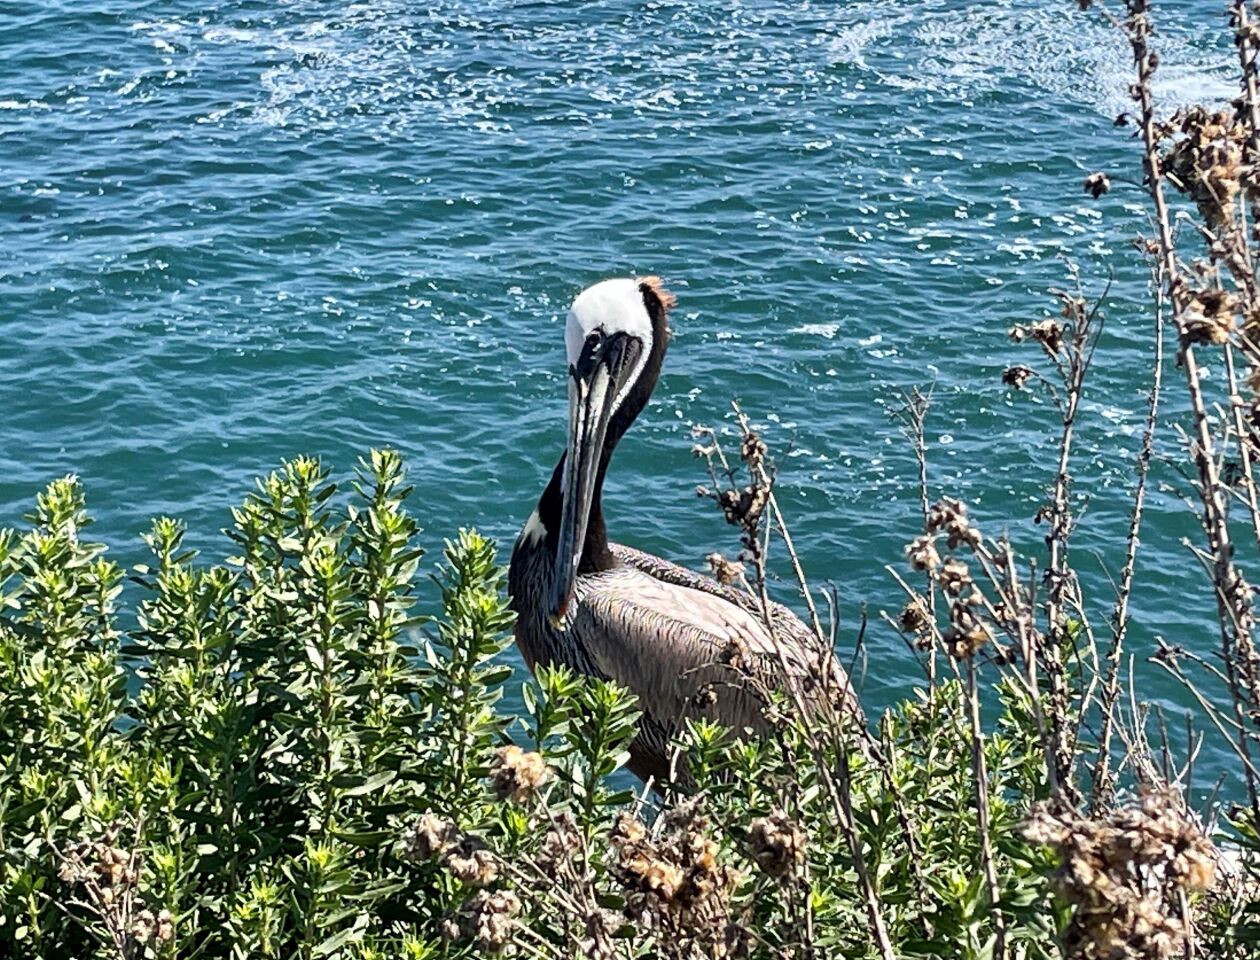 A brown pelican strikes a pose at La Jolla Cove.